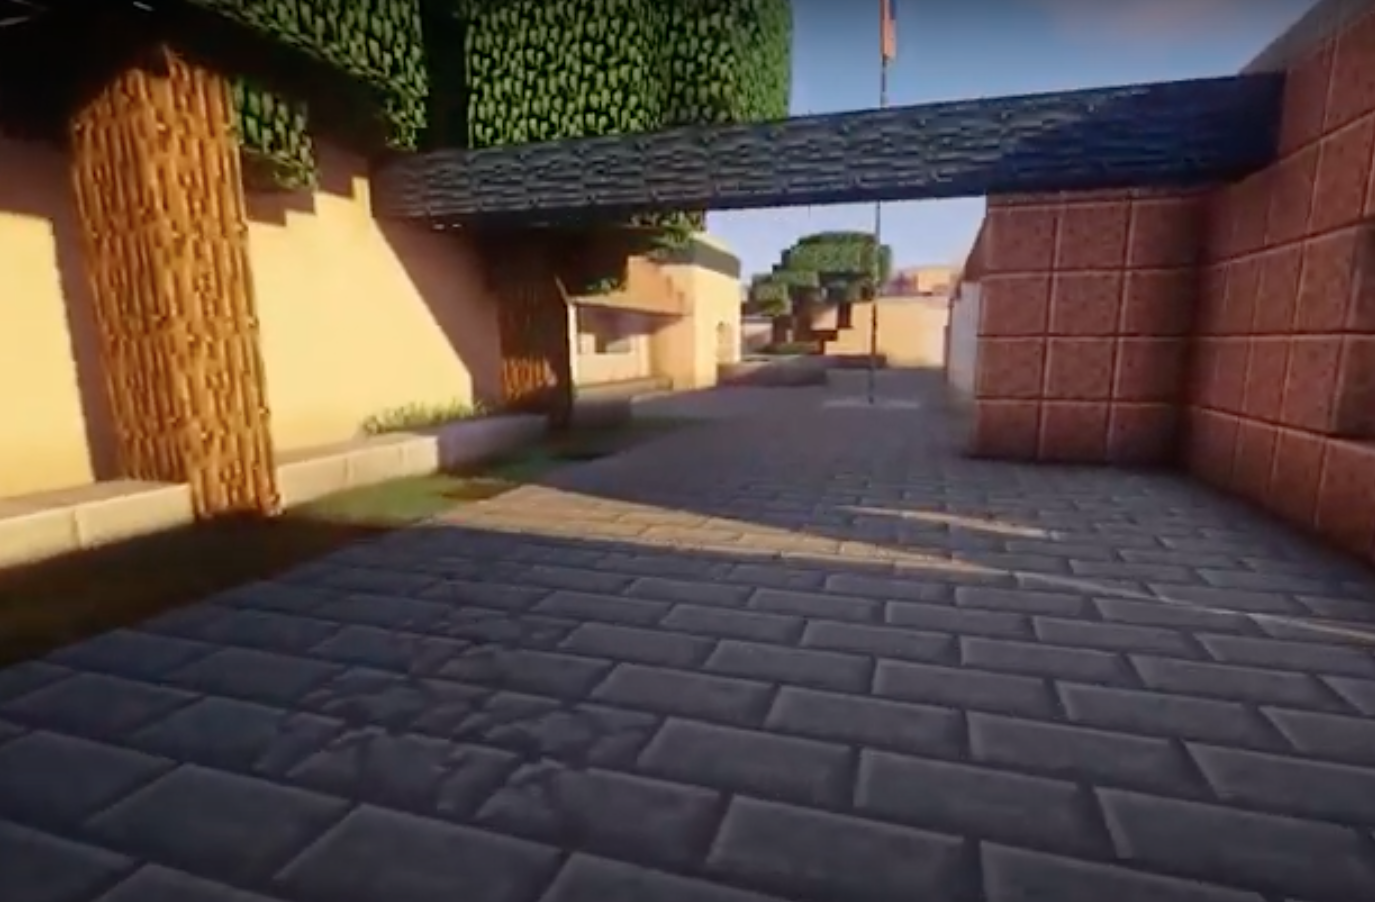 Screenshot of Minecraft campus